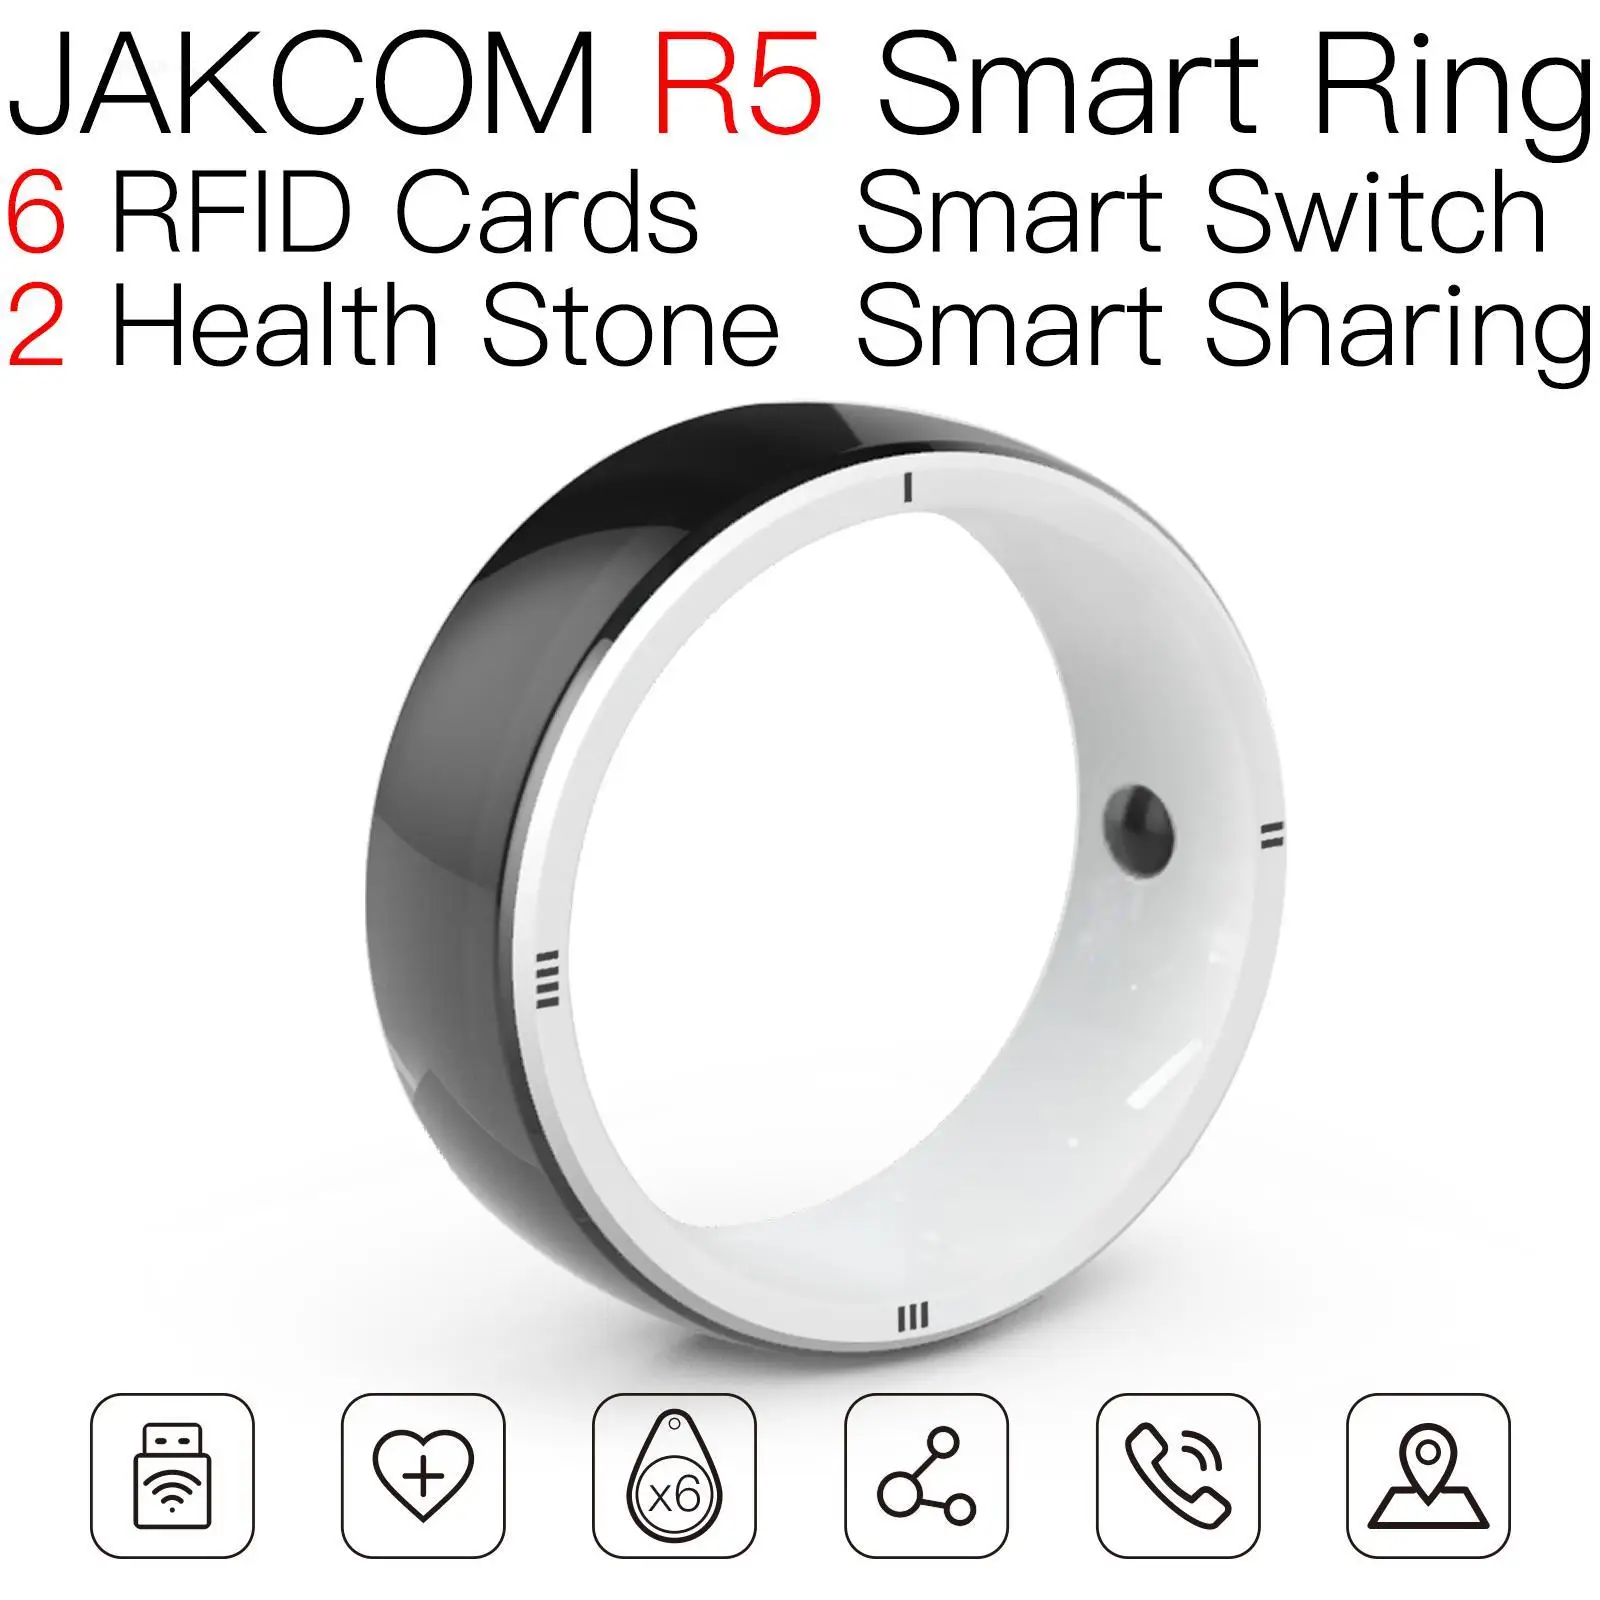 

Смарт-кольцо JAKCOM R5, супер значение, чем sac a fos pc 14 стикер с картами google, рчид 125 кГц, перезаписываемый, 100 шт., смарт-тег galaxy